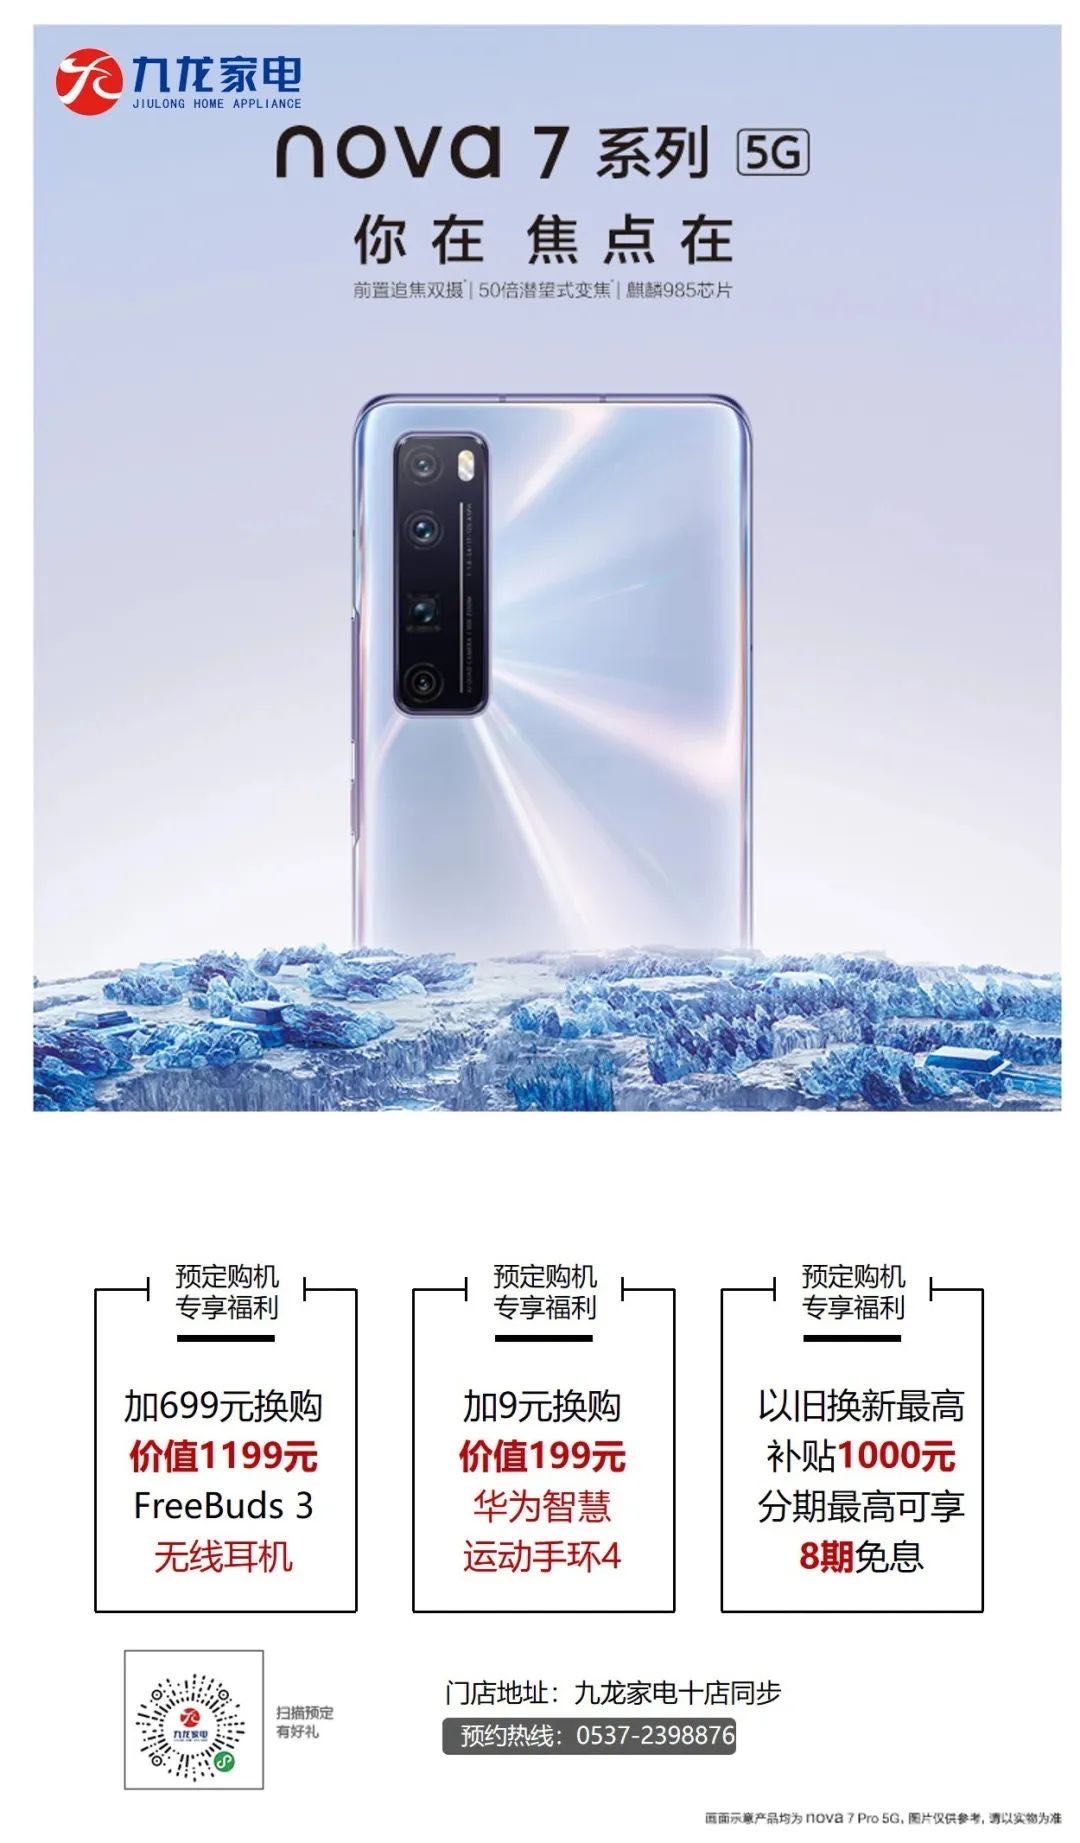 “神仙颜值”华为公司nova7系列产品开售，九龙家用电器最大补助11000元